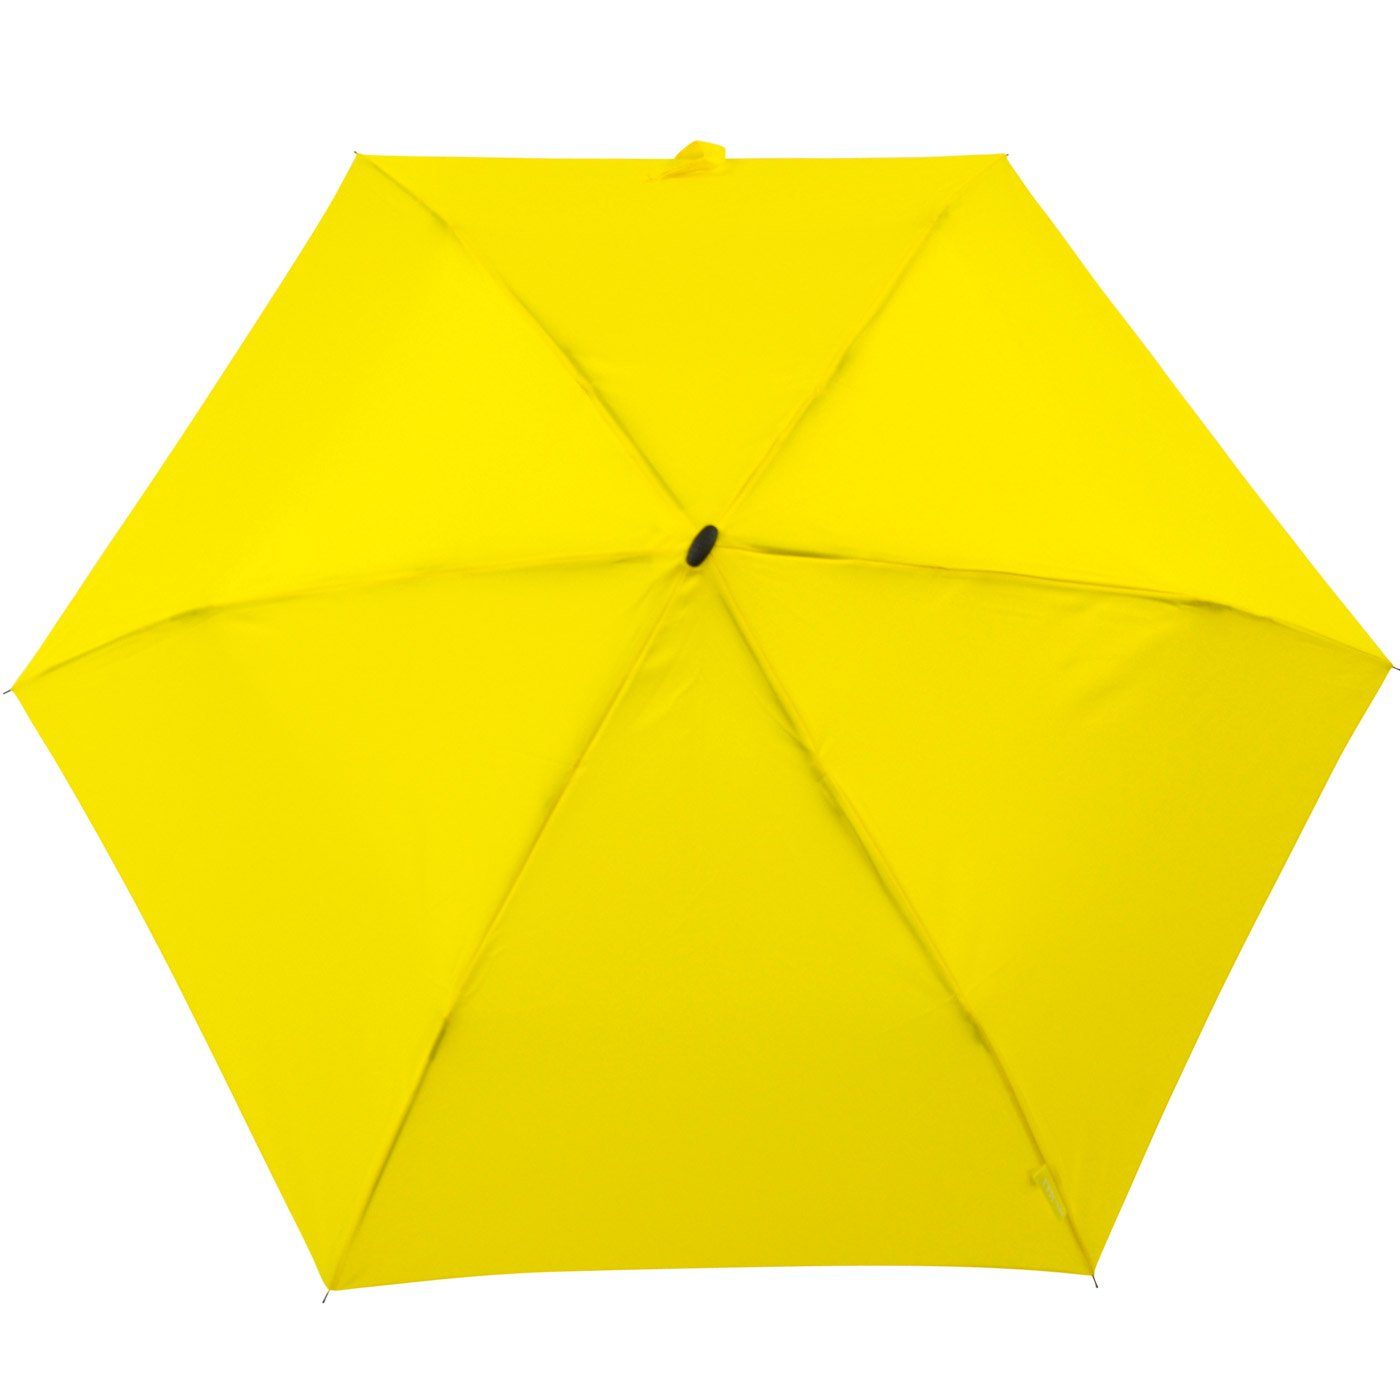 für perfekt Impliva flacher Taschenregenschirm miniMAX® gelb Reisegepäck Schirm, leichter Flat das